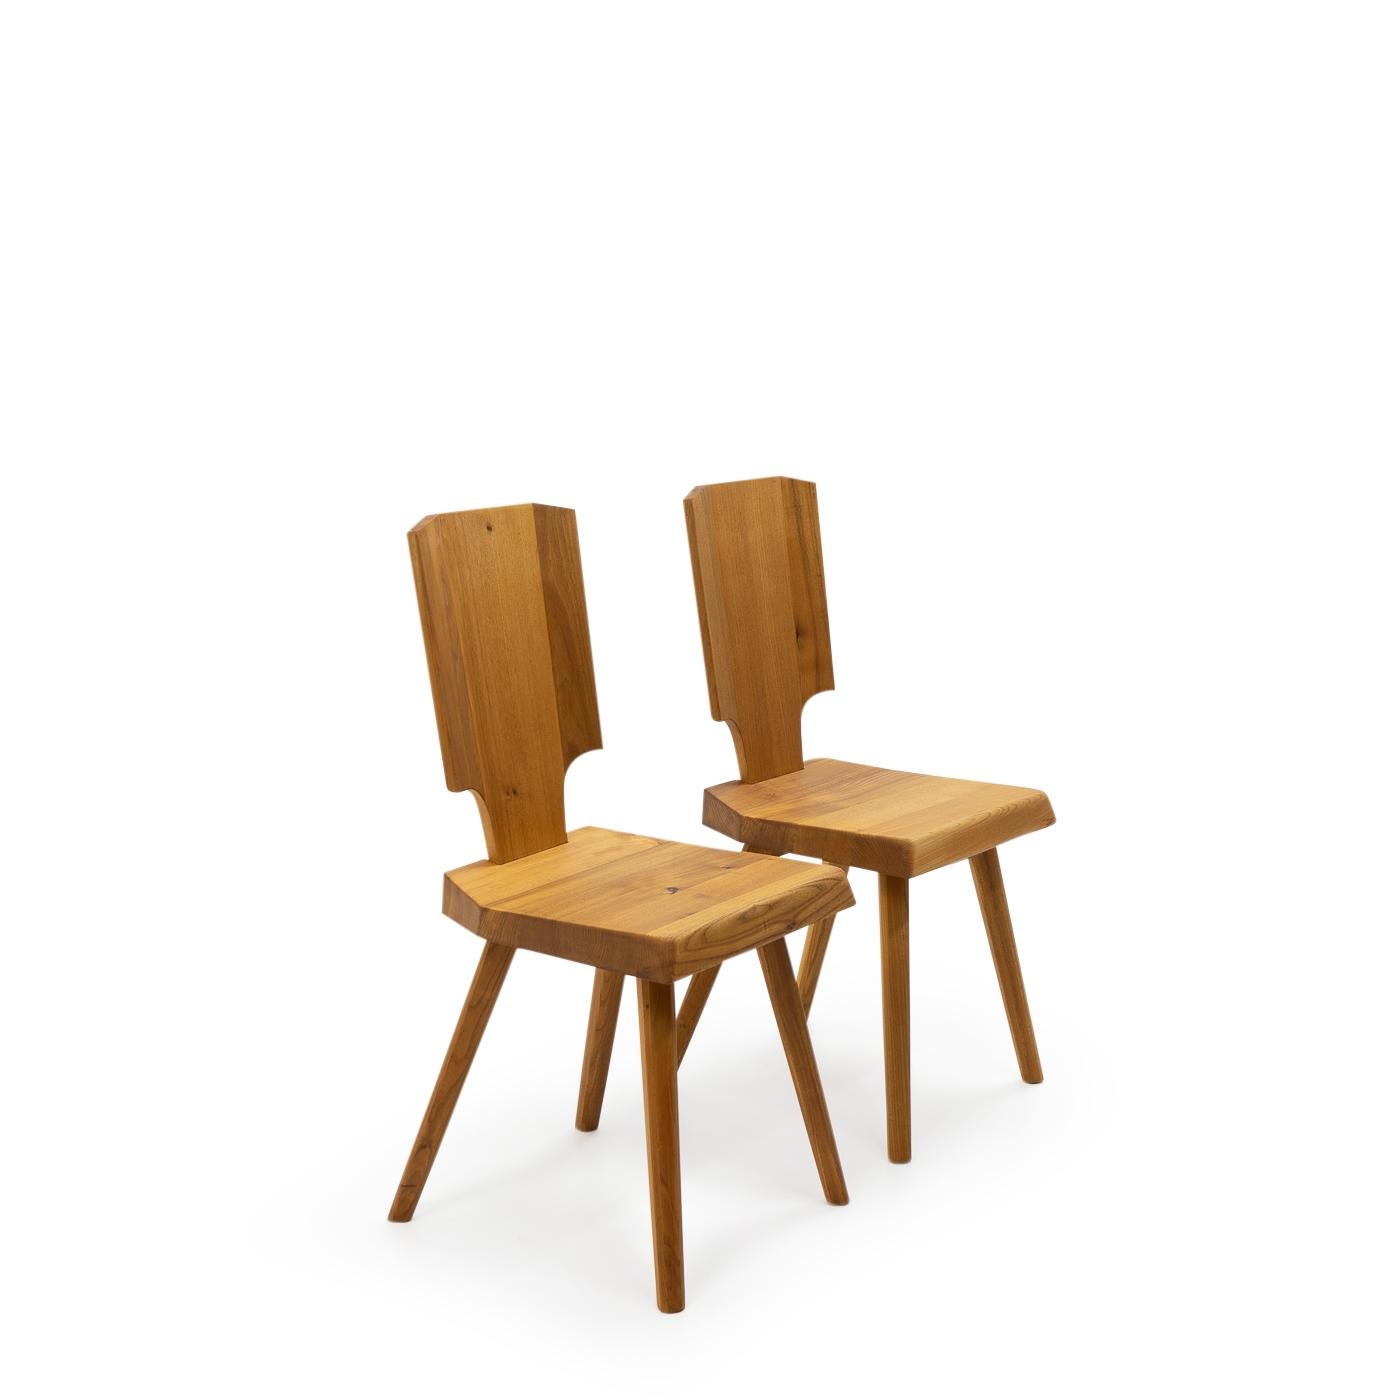 Vintage S28 Stühle aus Ulme: Laut Pierre Chapo ist der S28 eine moderne Interpretation des traditionellen elsässischen Stuhles, der von allen dekorativen Elementen befreit wurde, ohne dabei seinen Komfort und seine Silhouette zu verlieren.

Wie alle